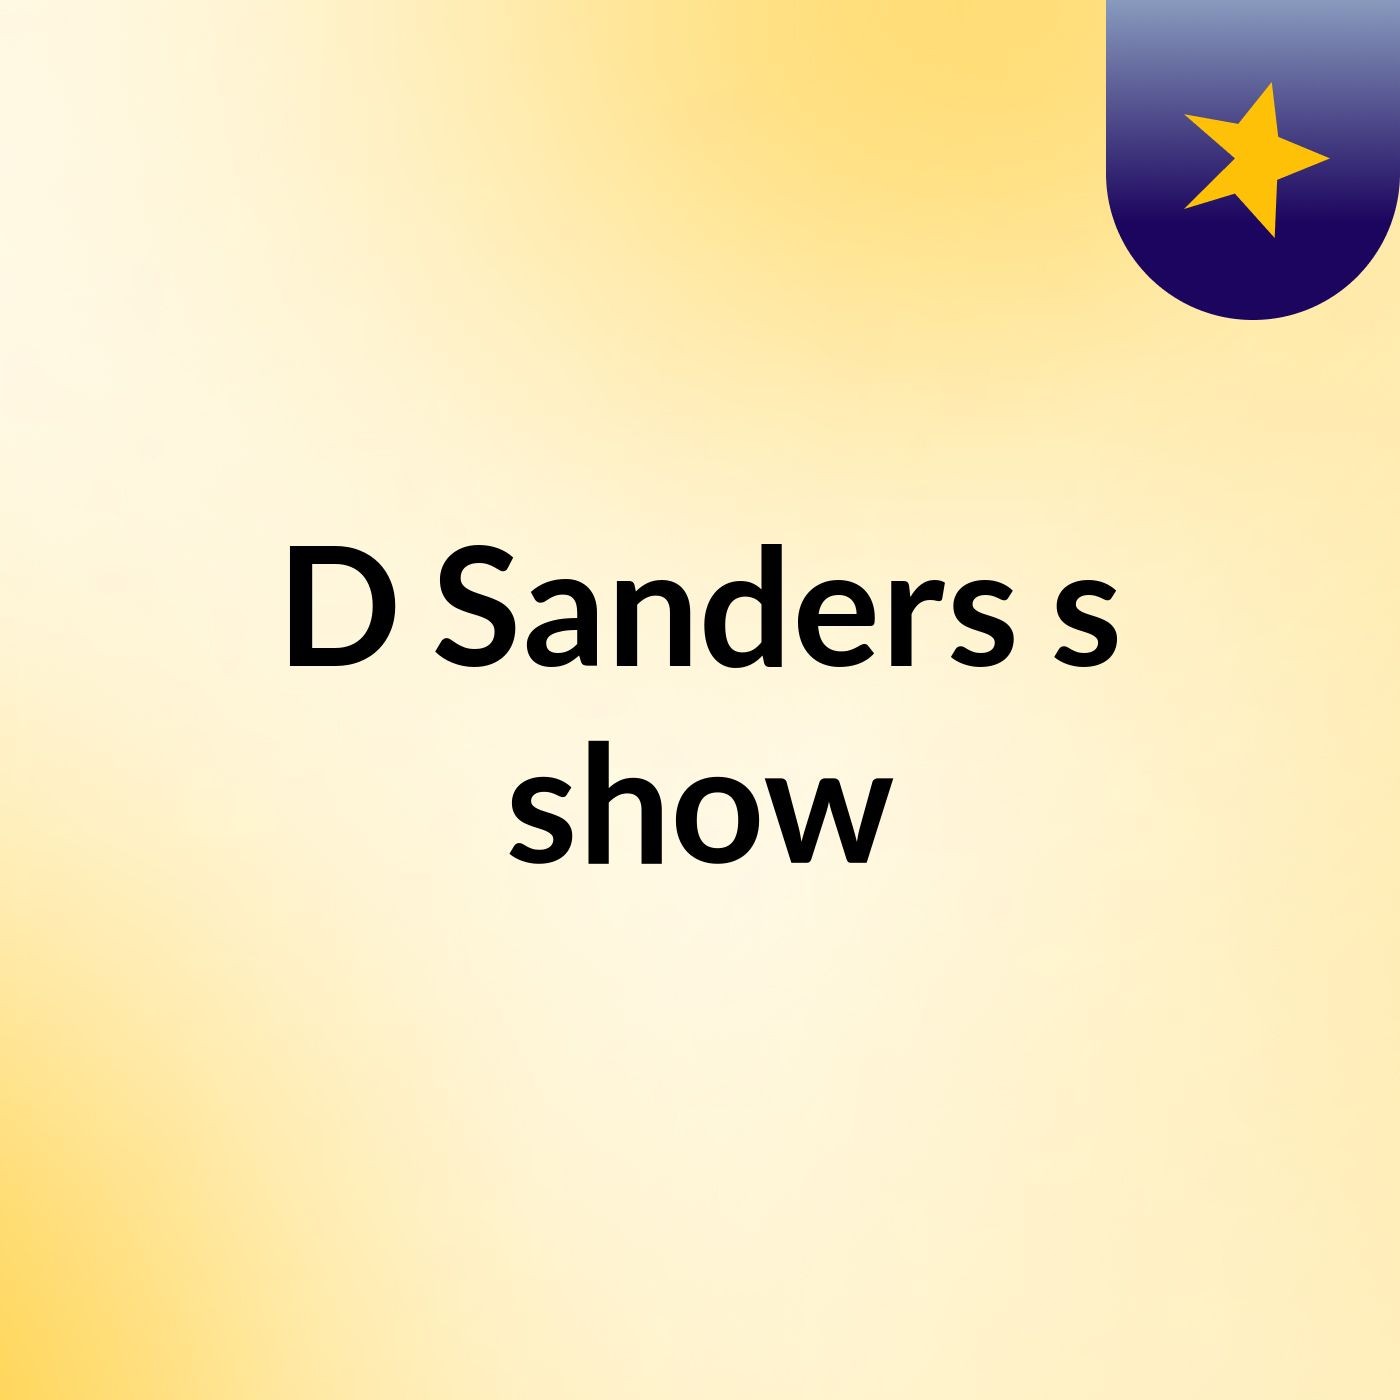 D Sanders's show